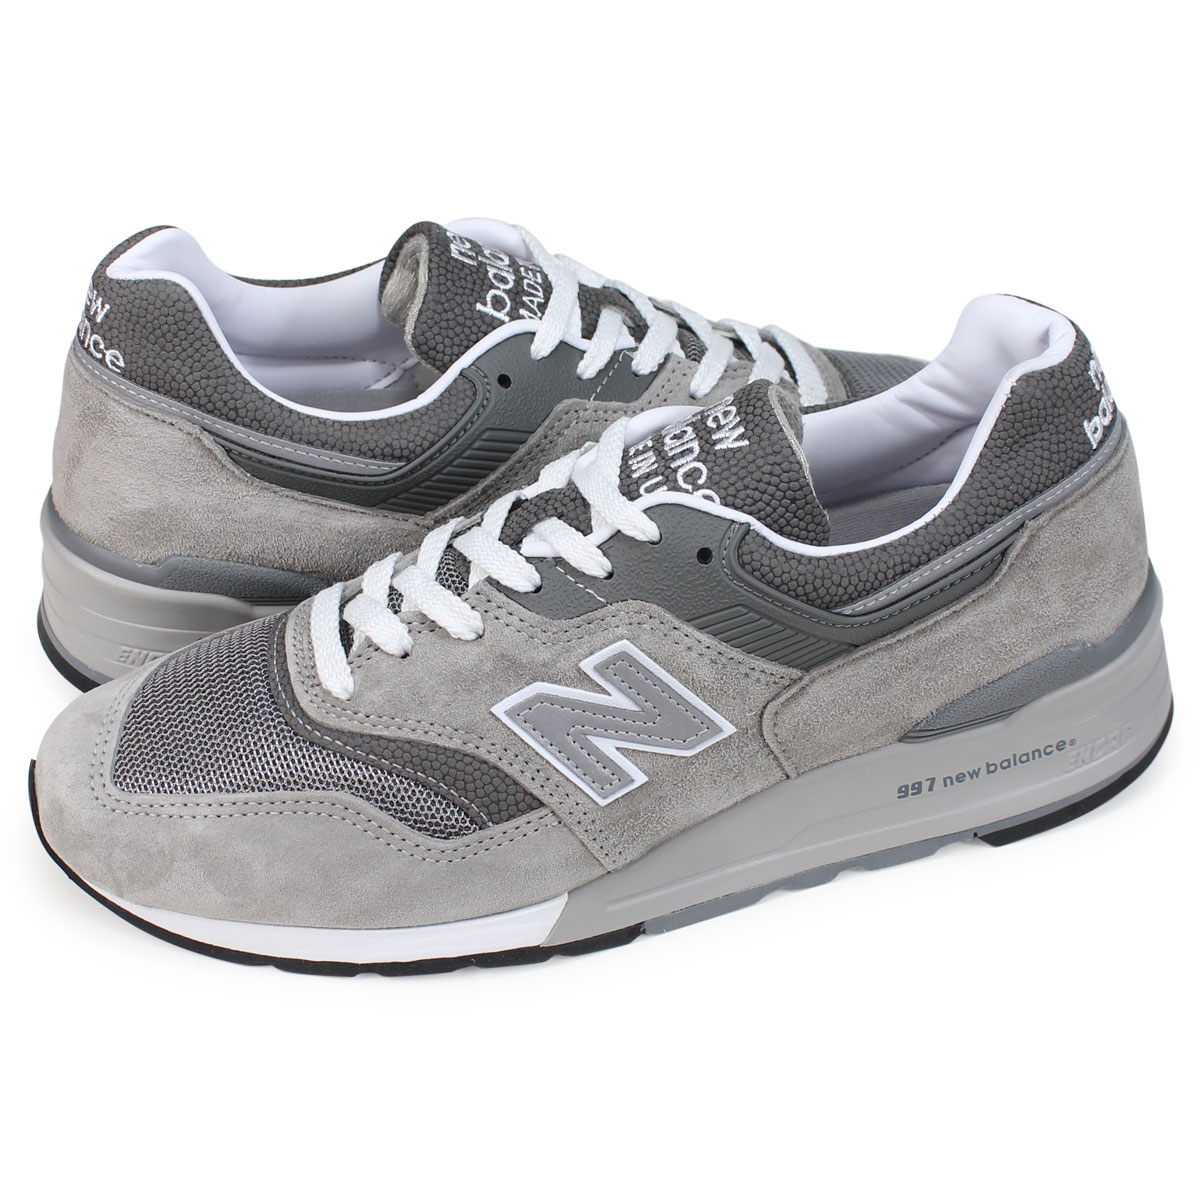 nb 997 grey